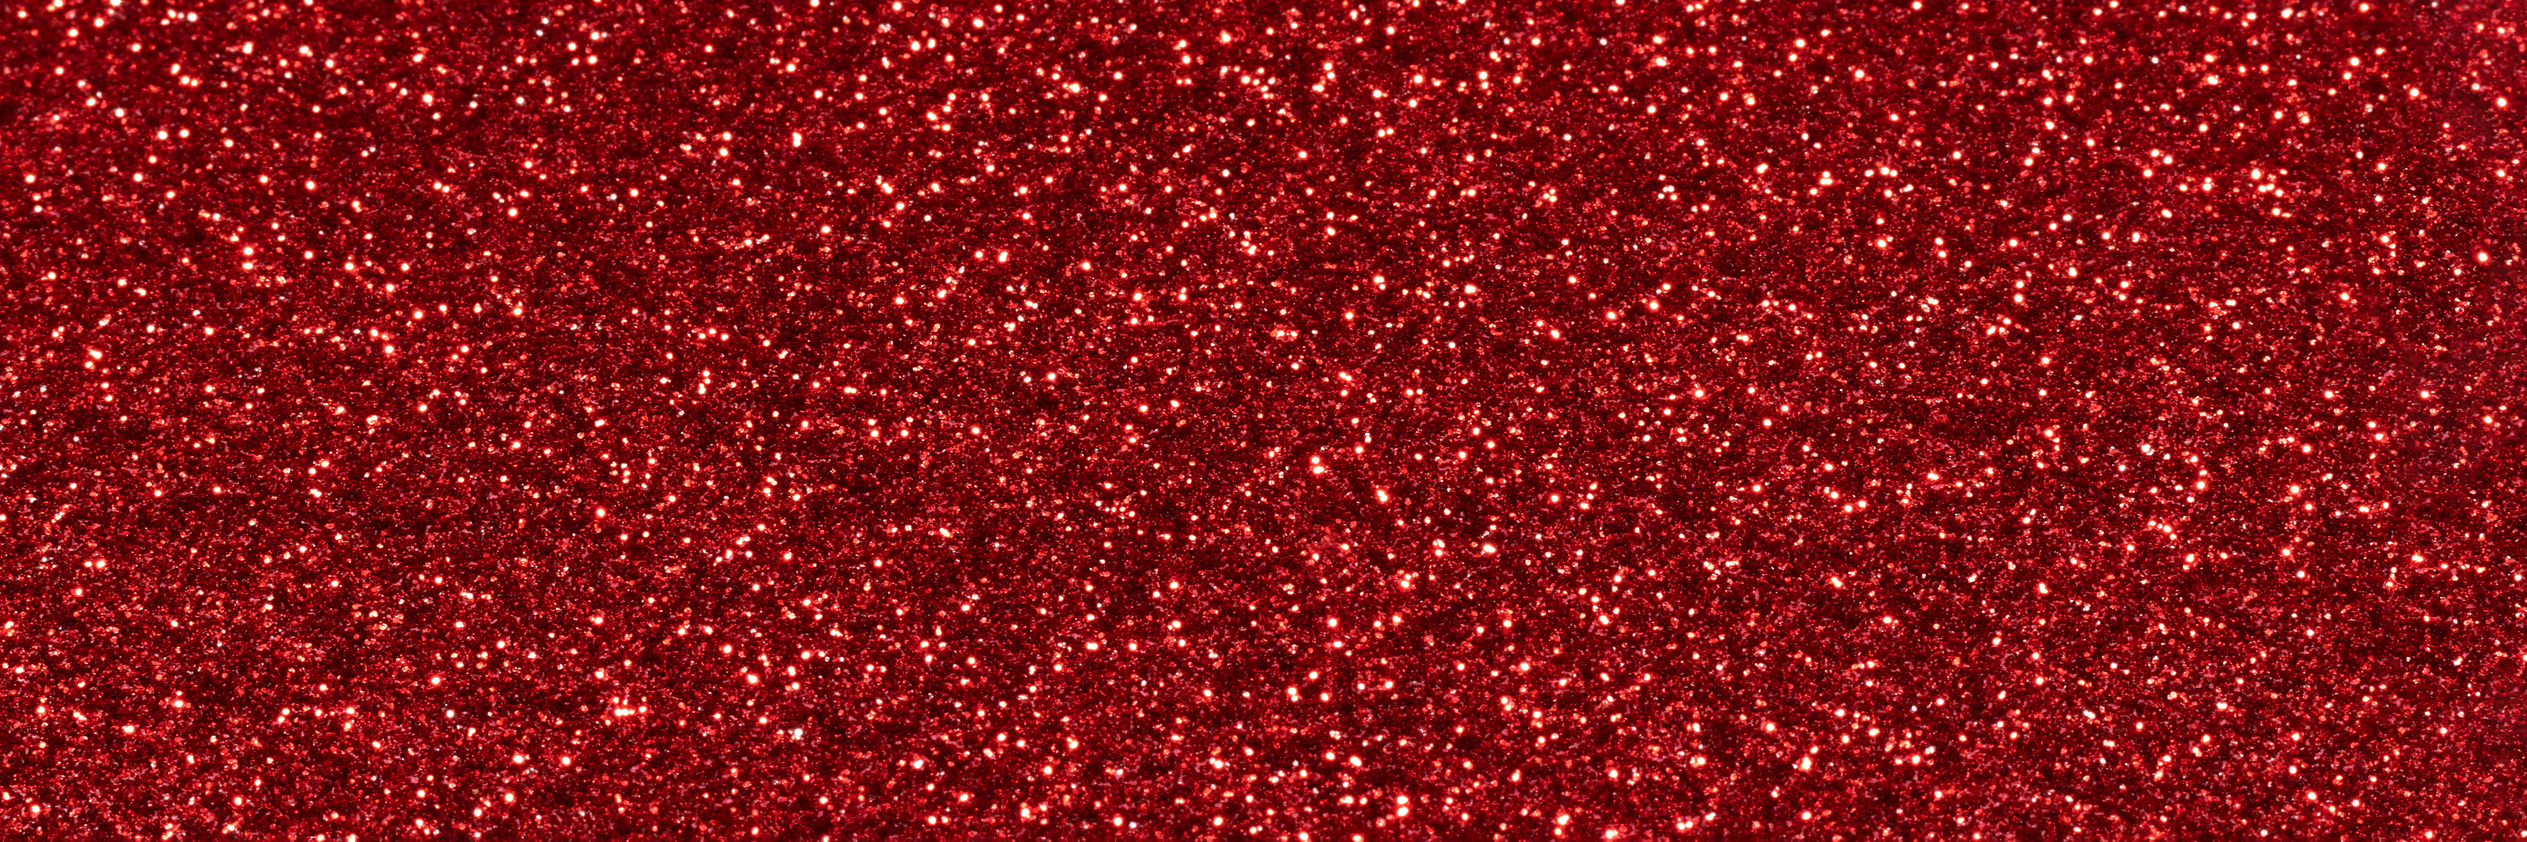 Red Sparkling Glitter Banner